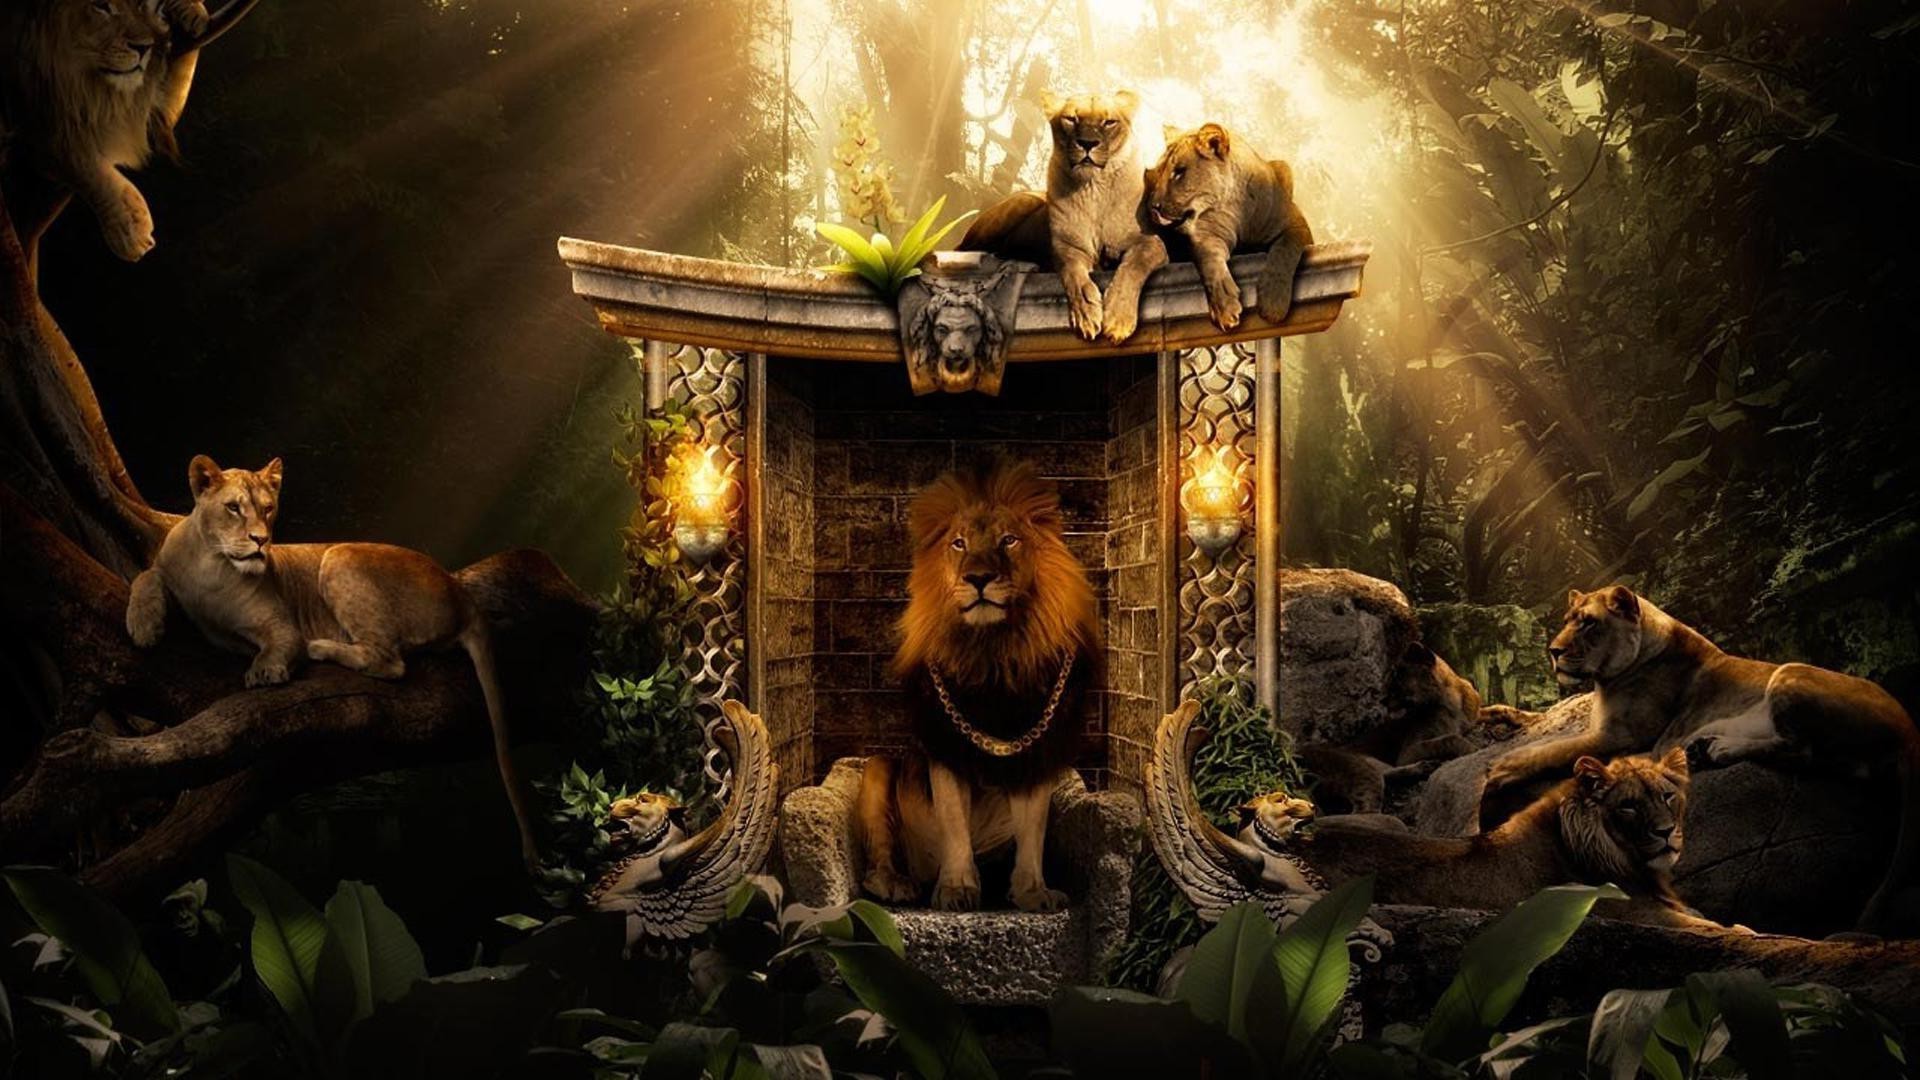 львы кошка млекопитающее два искусство лев один древесины собака дерево обезьяна живопись джунгли